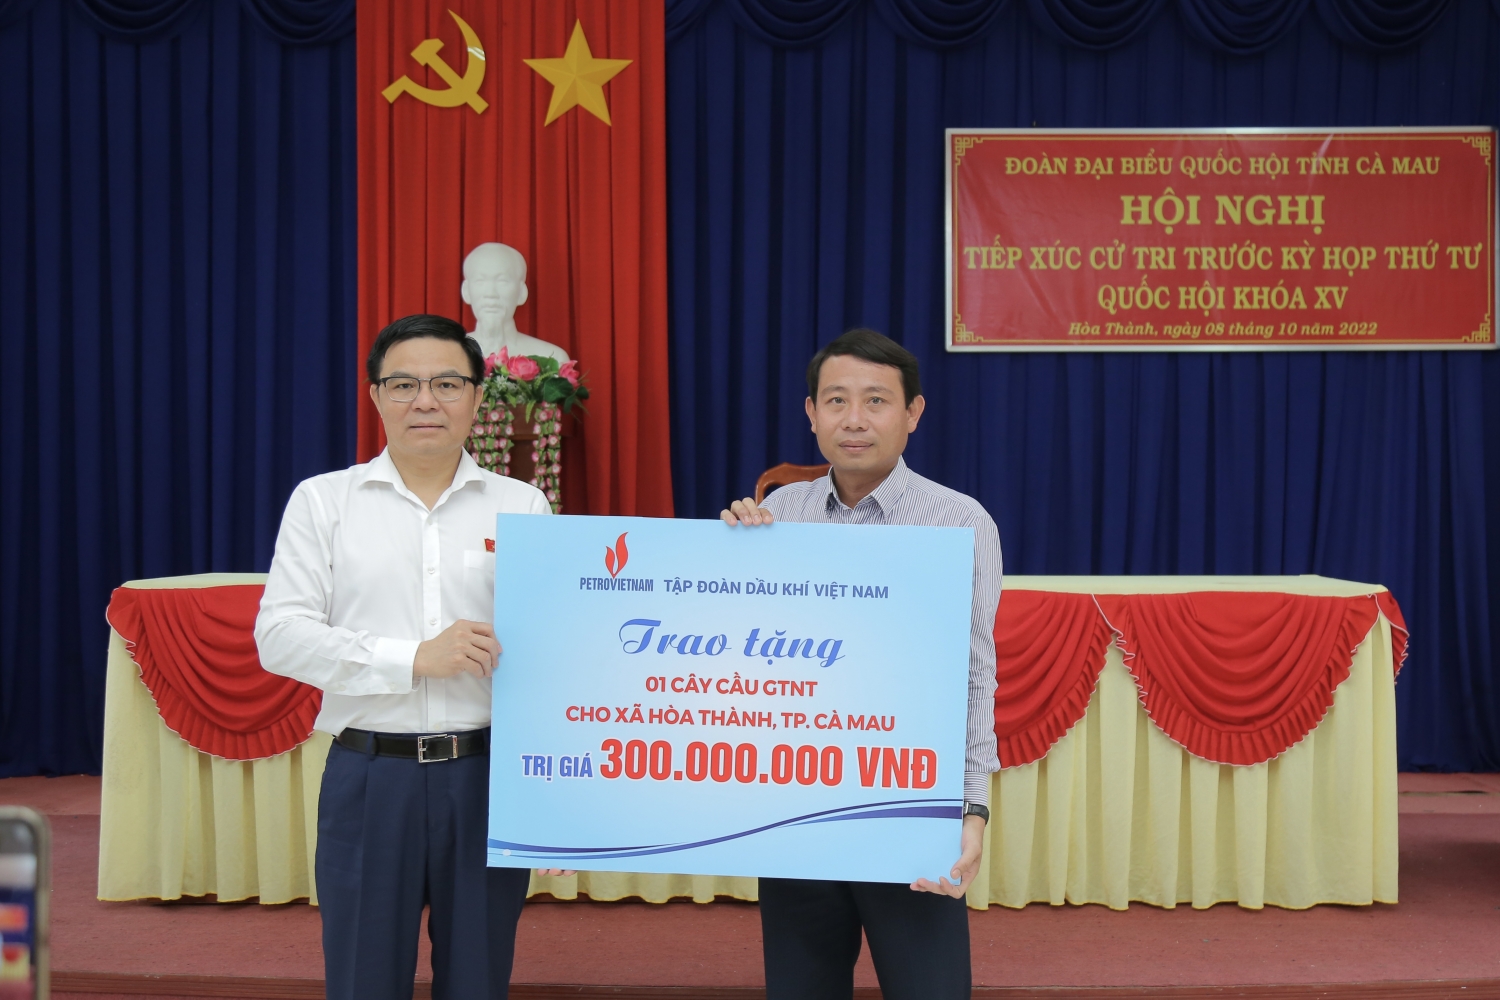 Đồng chí Lê Mạnh Hùng trao biển tượng trưng ủng hộ xây dựng cầu giao thông nông thôn tại xã Hoà Thành